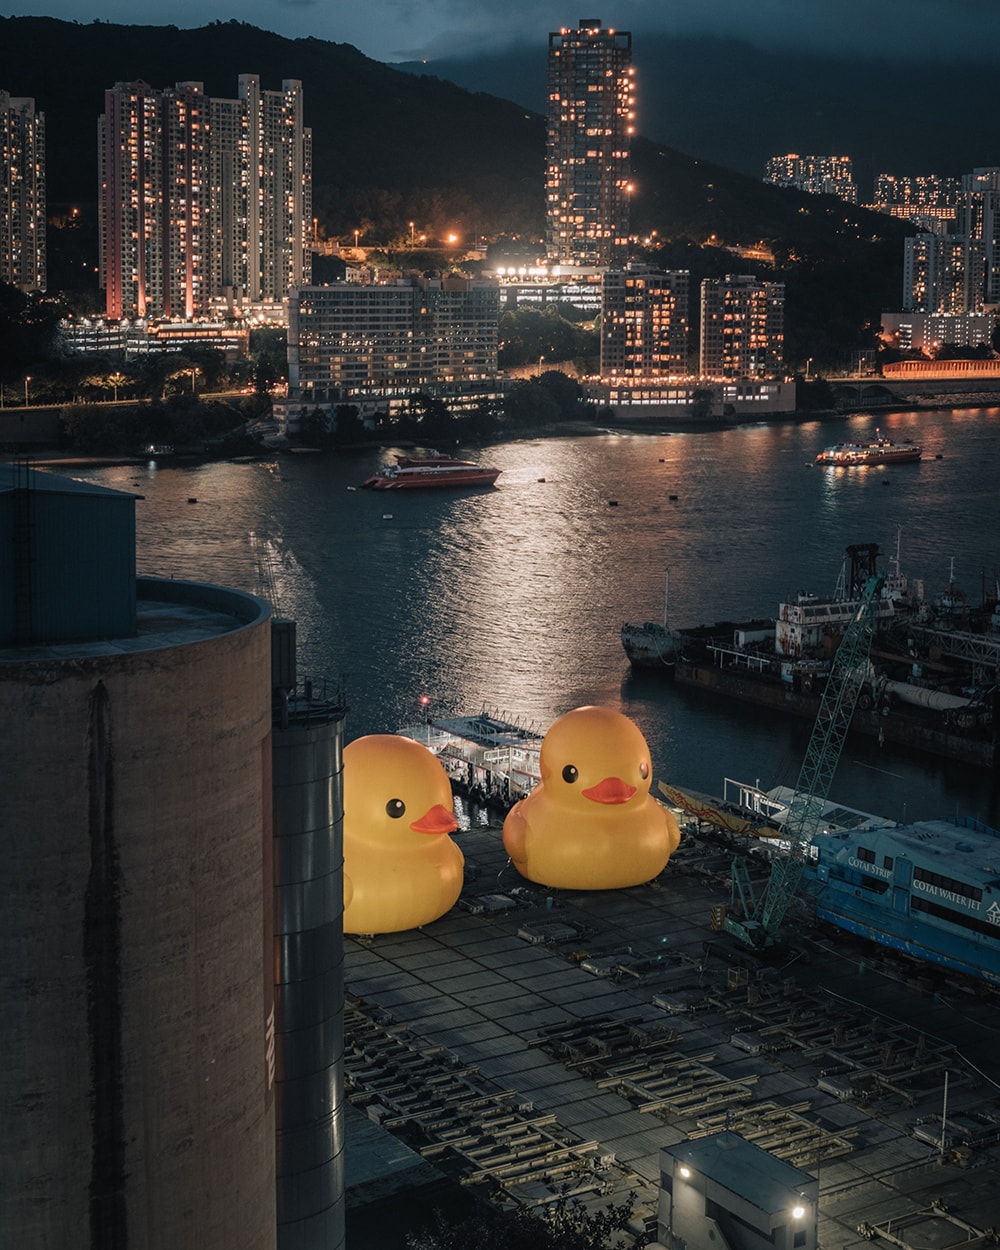 荷蘭藝術家 Florentijn Hofman 創作《橡皮鴨二重暢》即將登陸香港維多利亞港